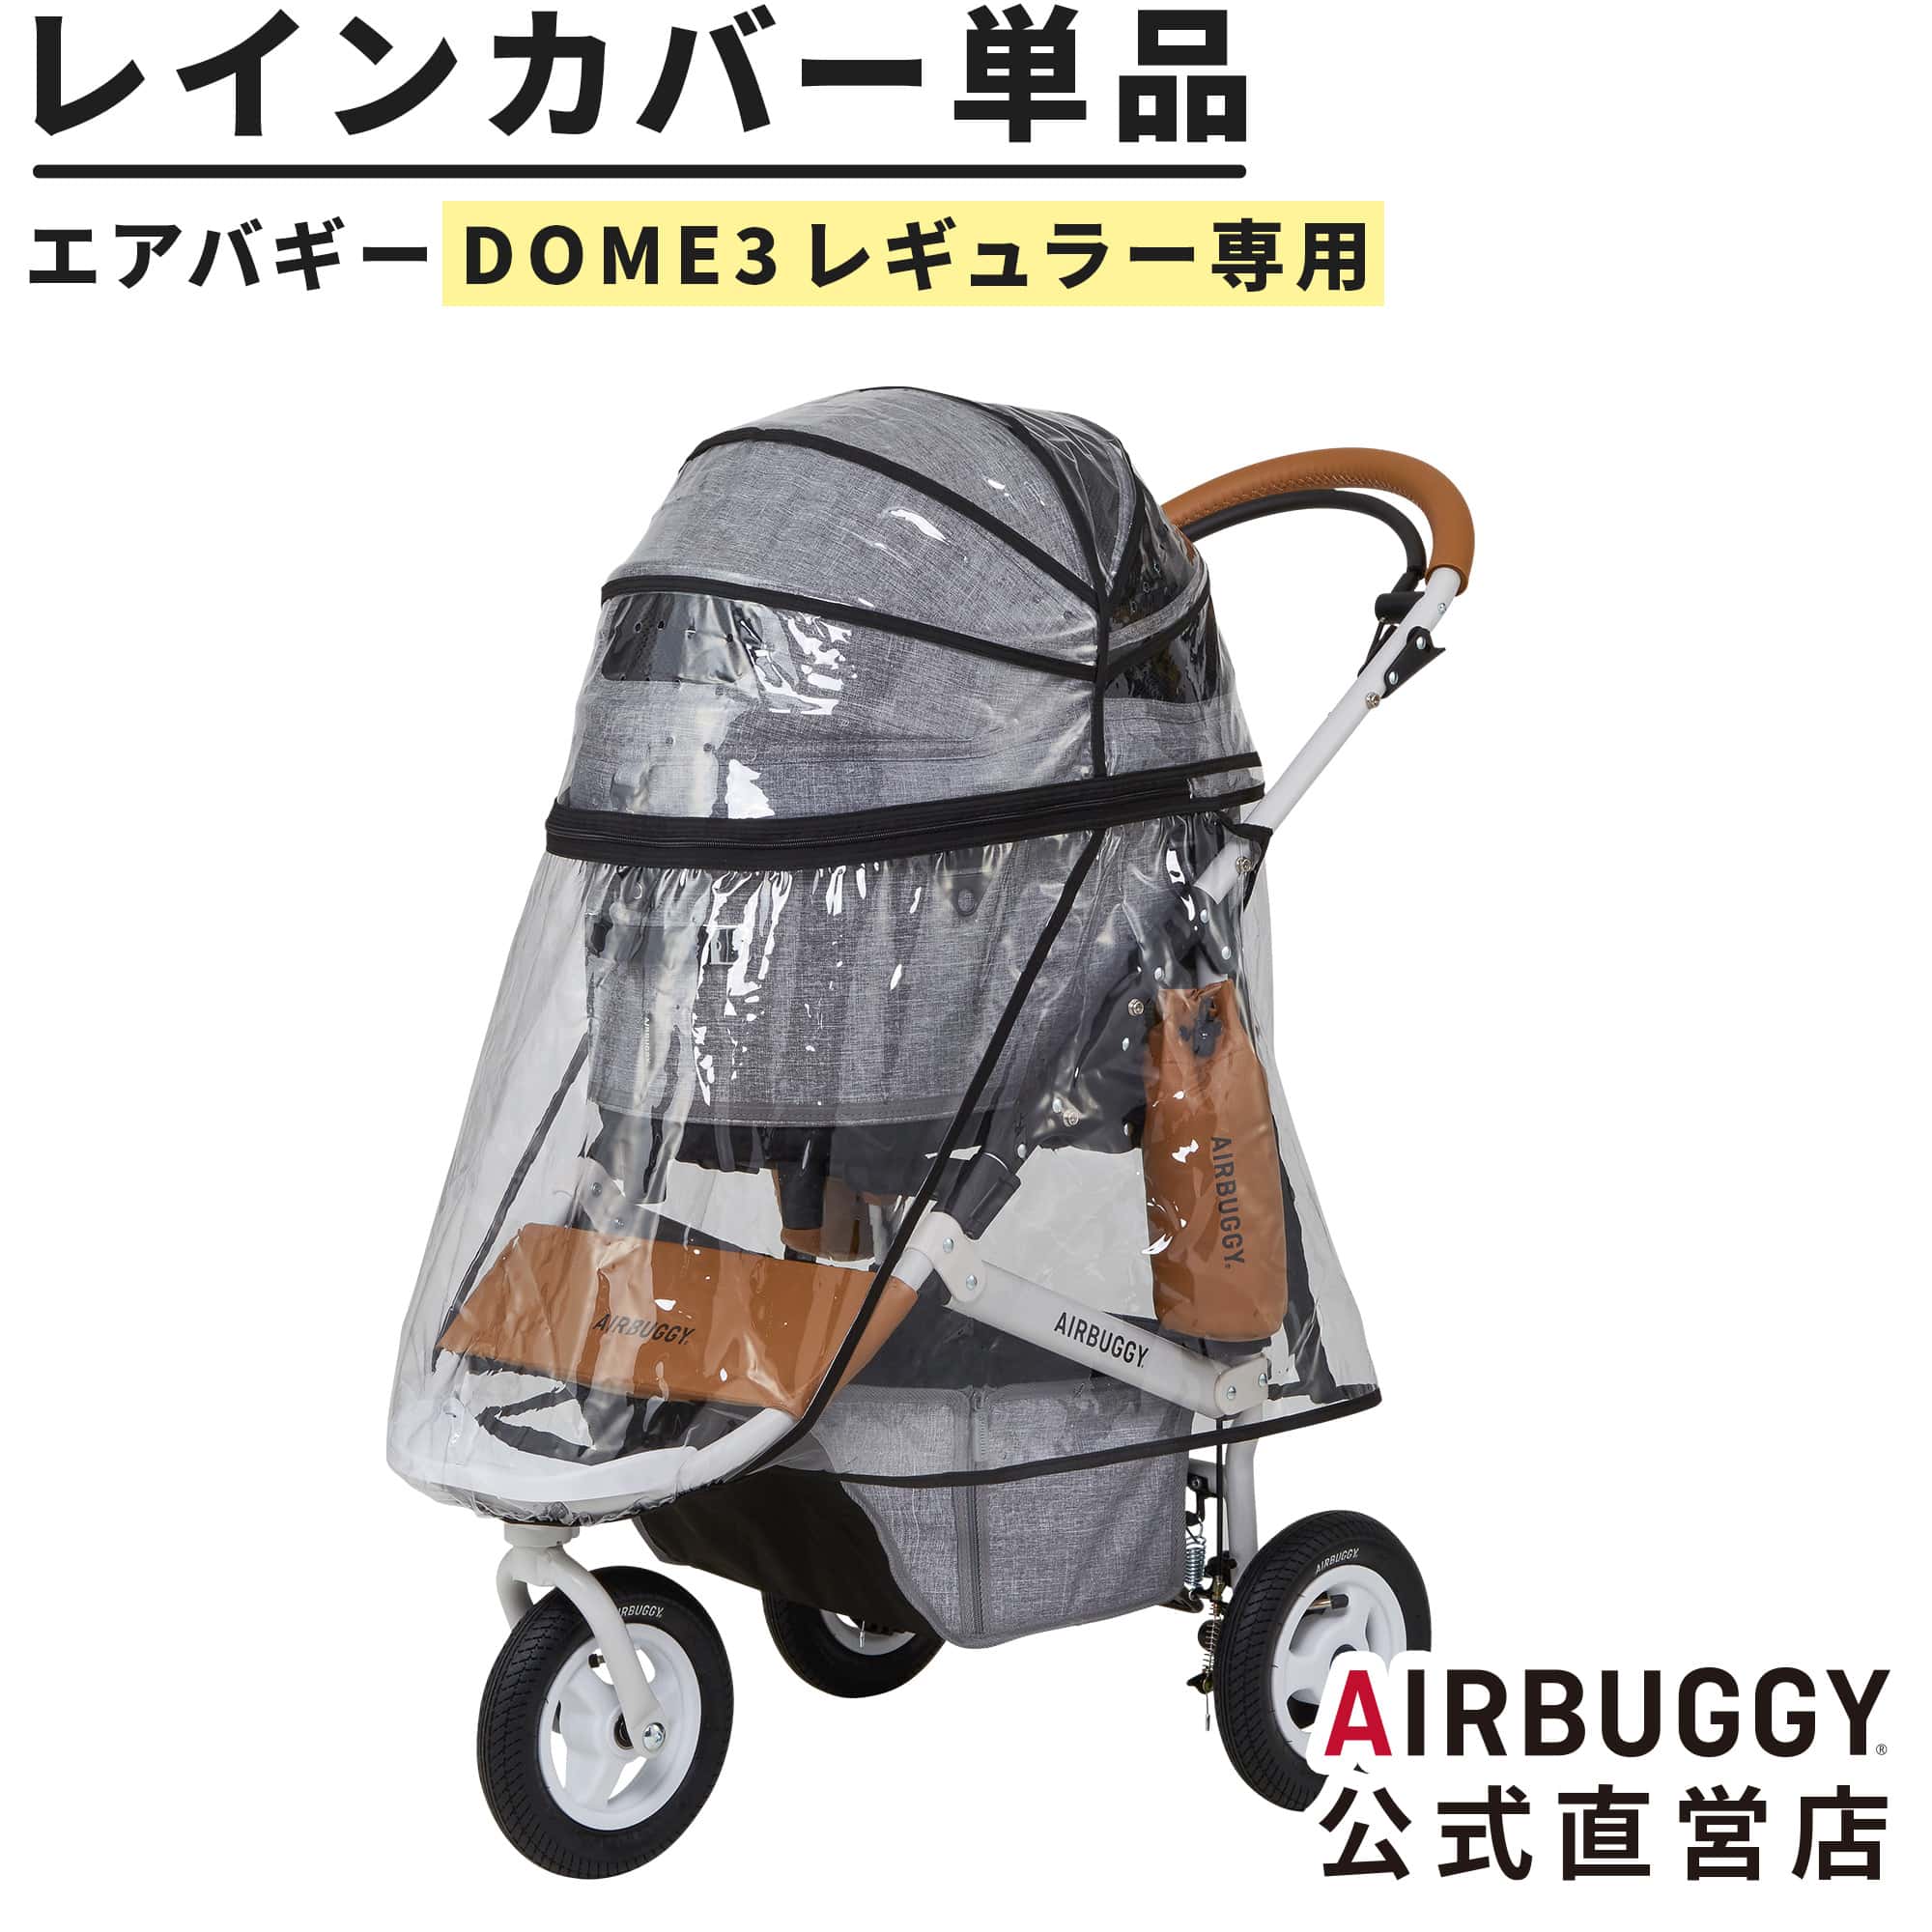 楽天市場】エアバギー ドーム3 ラージサイズ専用 レインカバー単品 